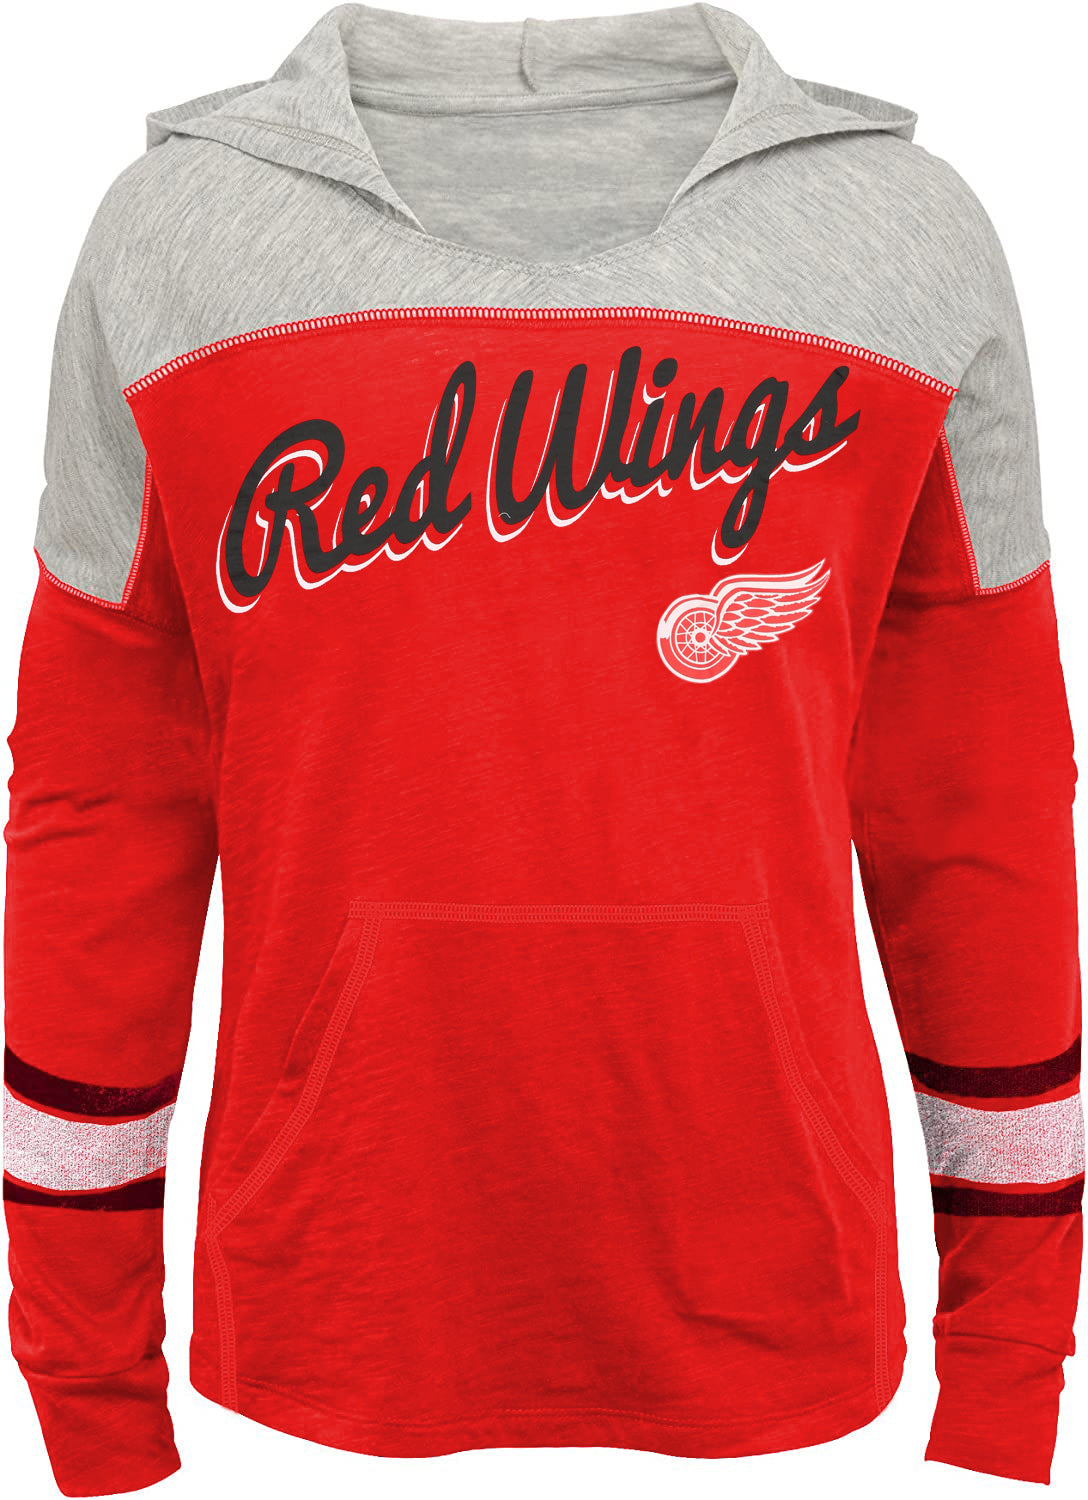 Unisex Children's Detroit Red Wings NHL Fan Jerseys for sale